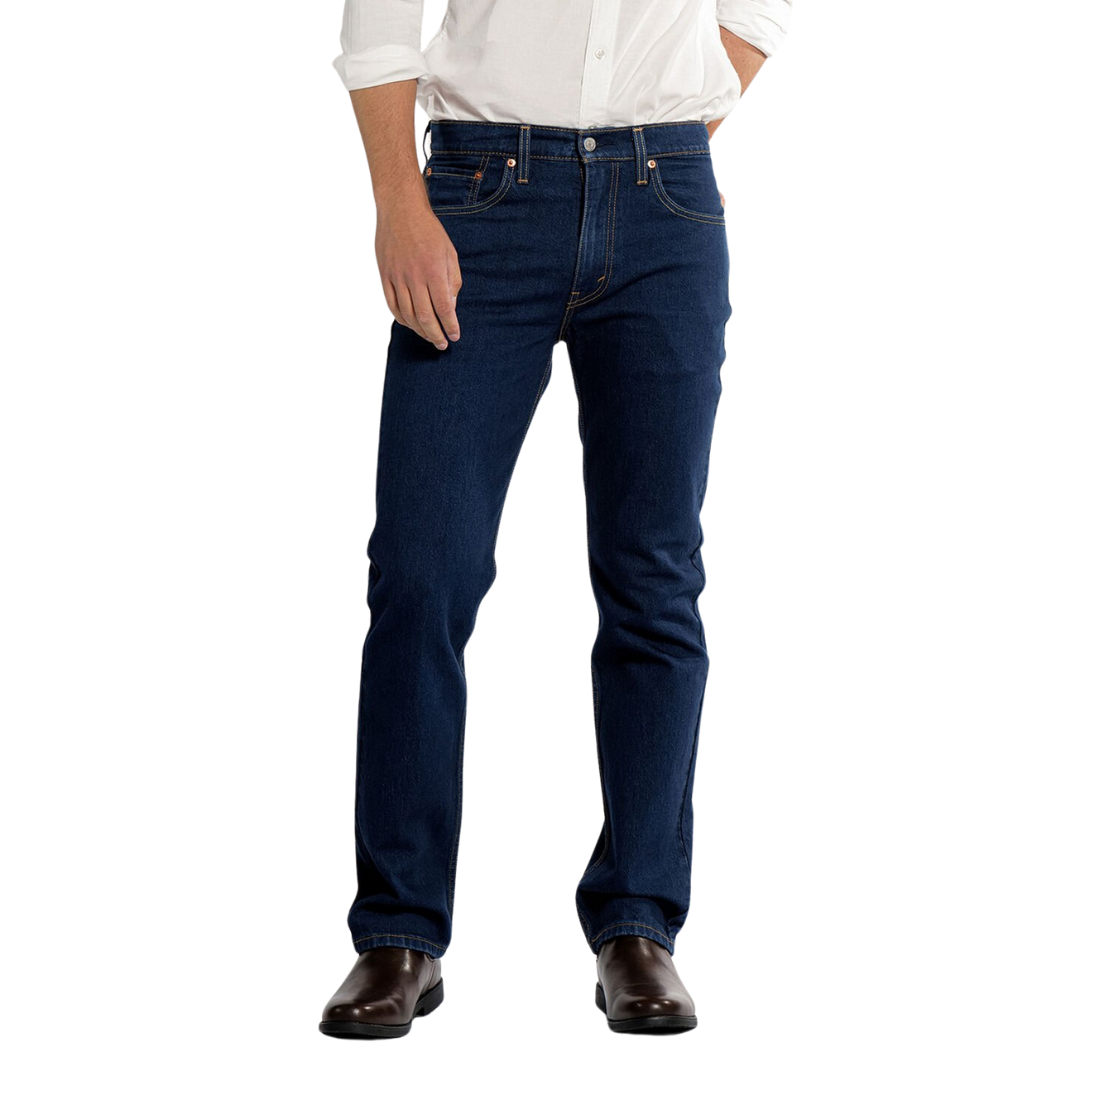 Levis® 516 Standard Striaght Jean 3232 Blue/Black Mens Jeans by Levis | The Bloke Shop